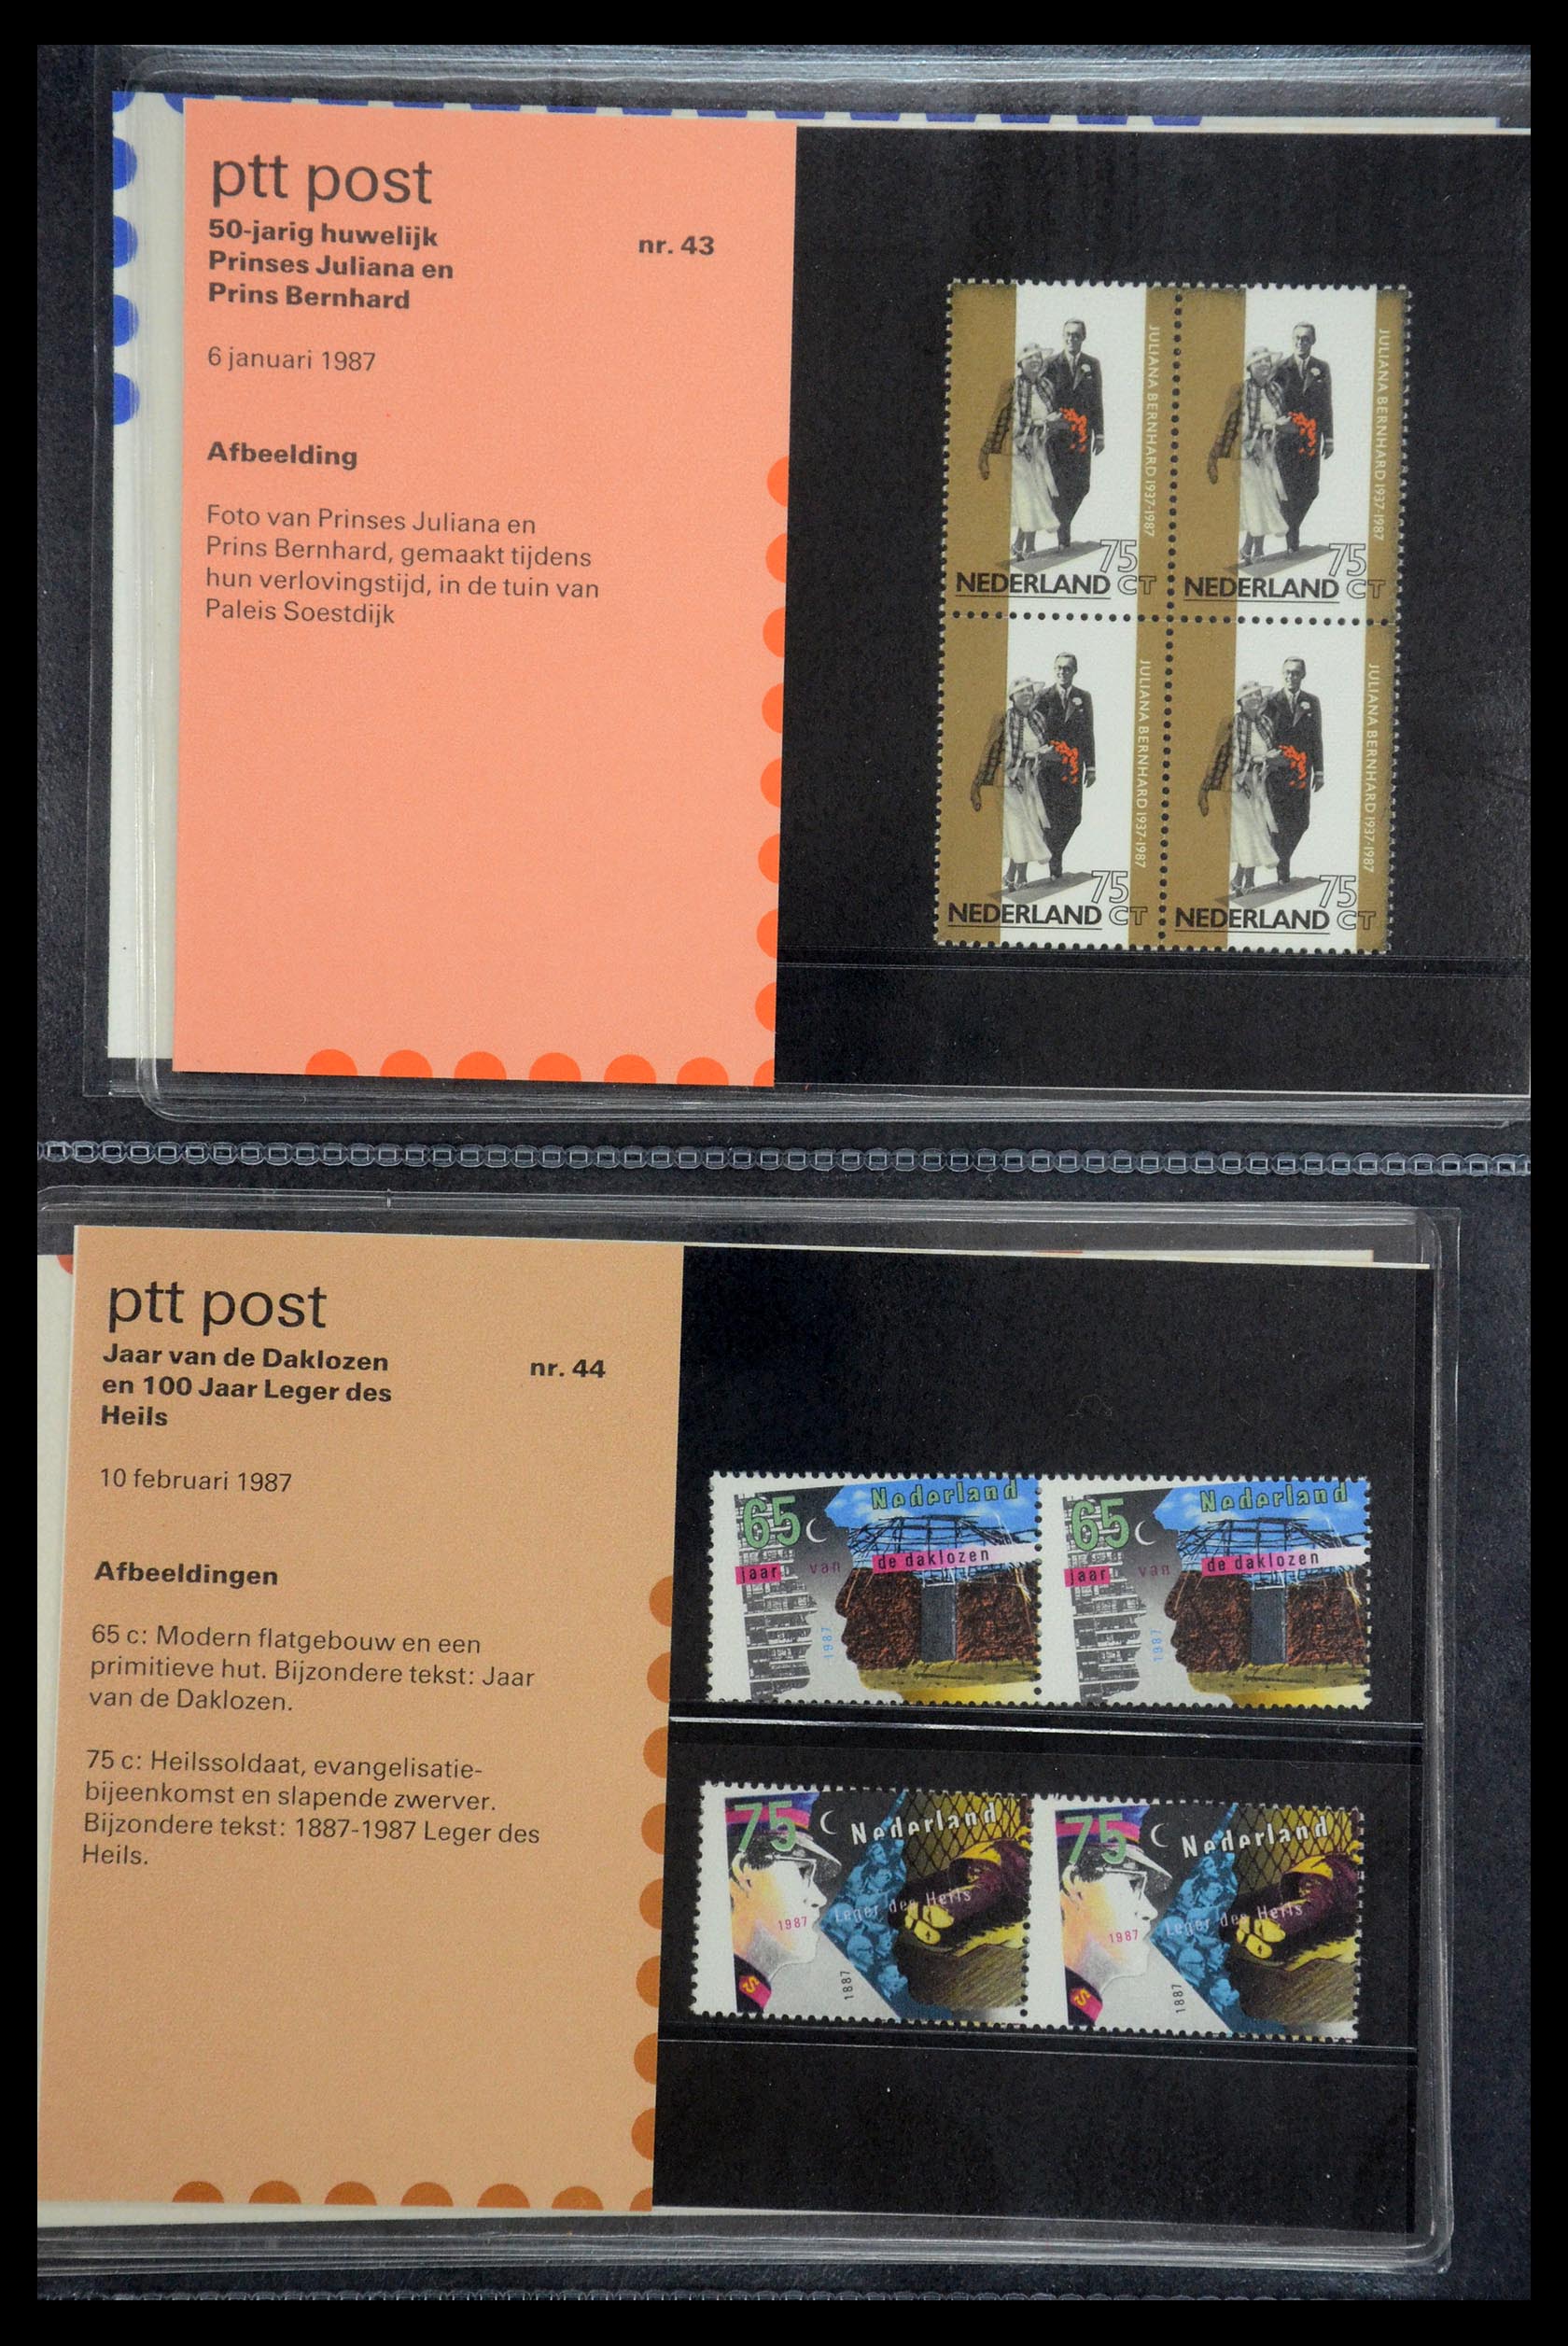 35187 022 - Stamp Collection 35187 Netherlands PTT presentation packs 1982-2019!